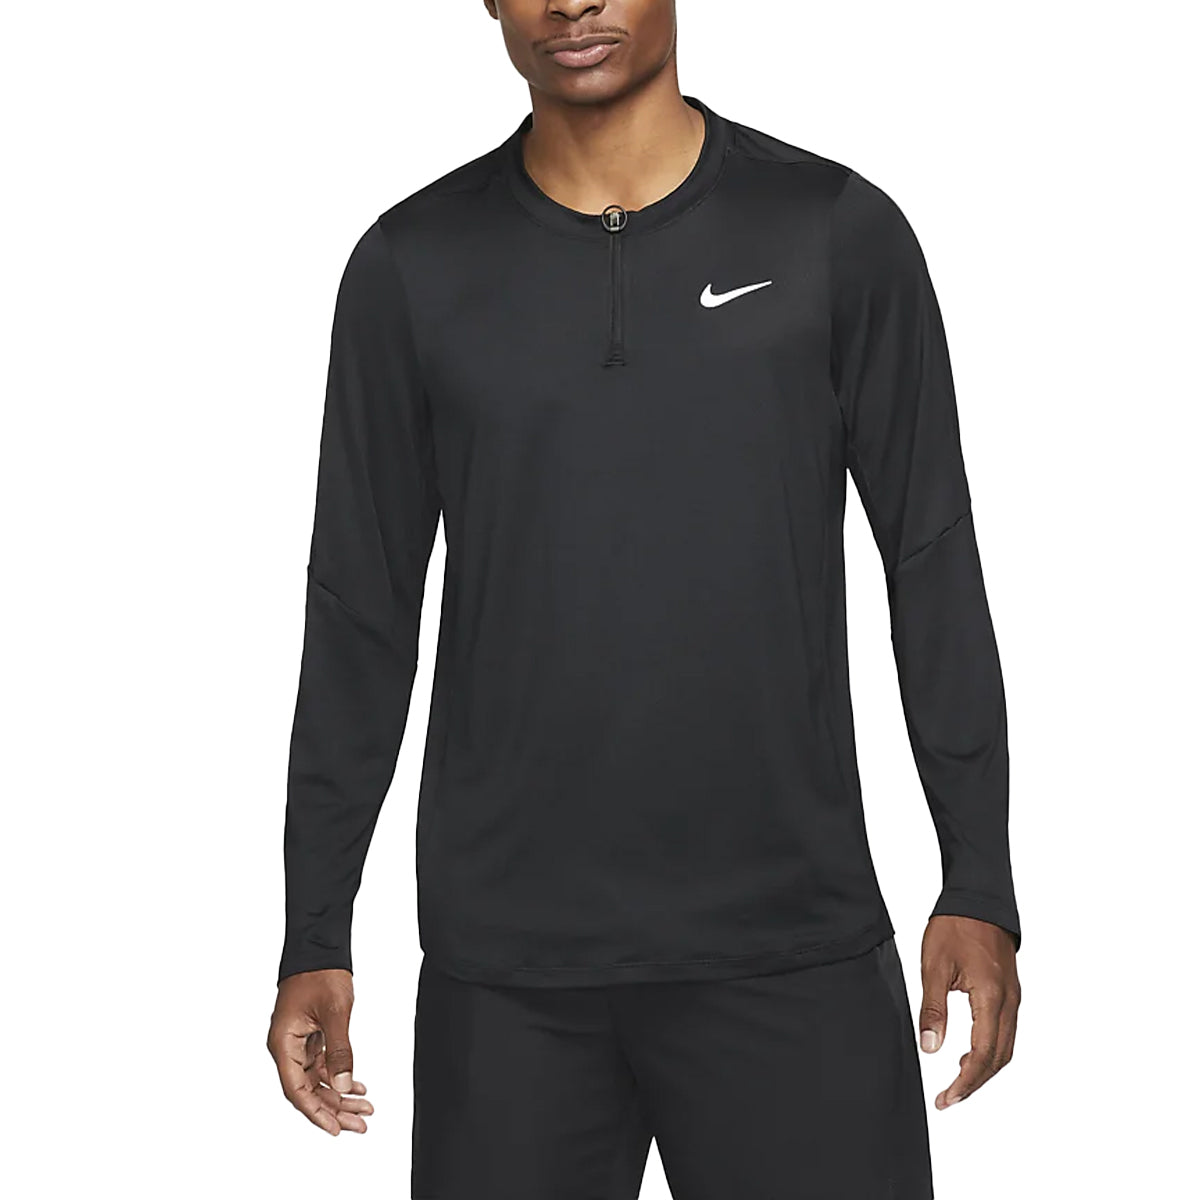 Haut Nike Court Dri-Fit Advantage Half-Zip (Homme) - Noir/Noir/Blanc